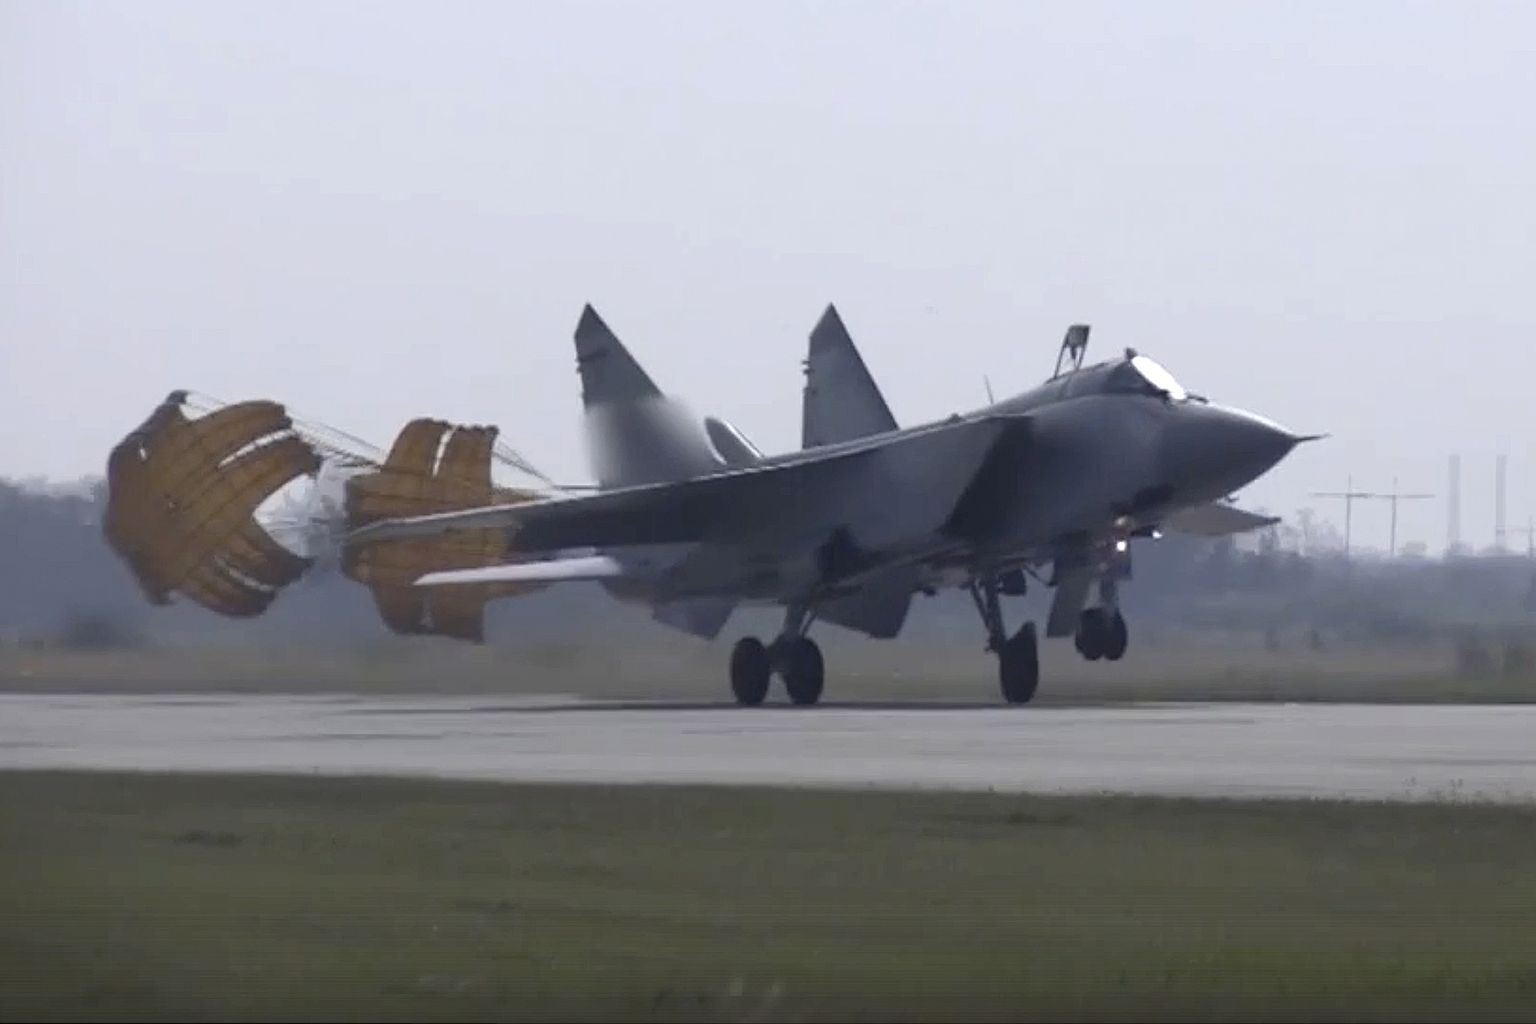 Hüperhelirakettidega Kinžall relvastatud sõjalennuk MiG-31 maandumas täna Kaliningradis.